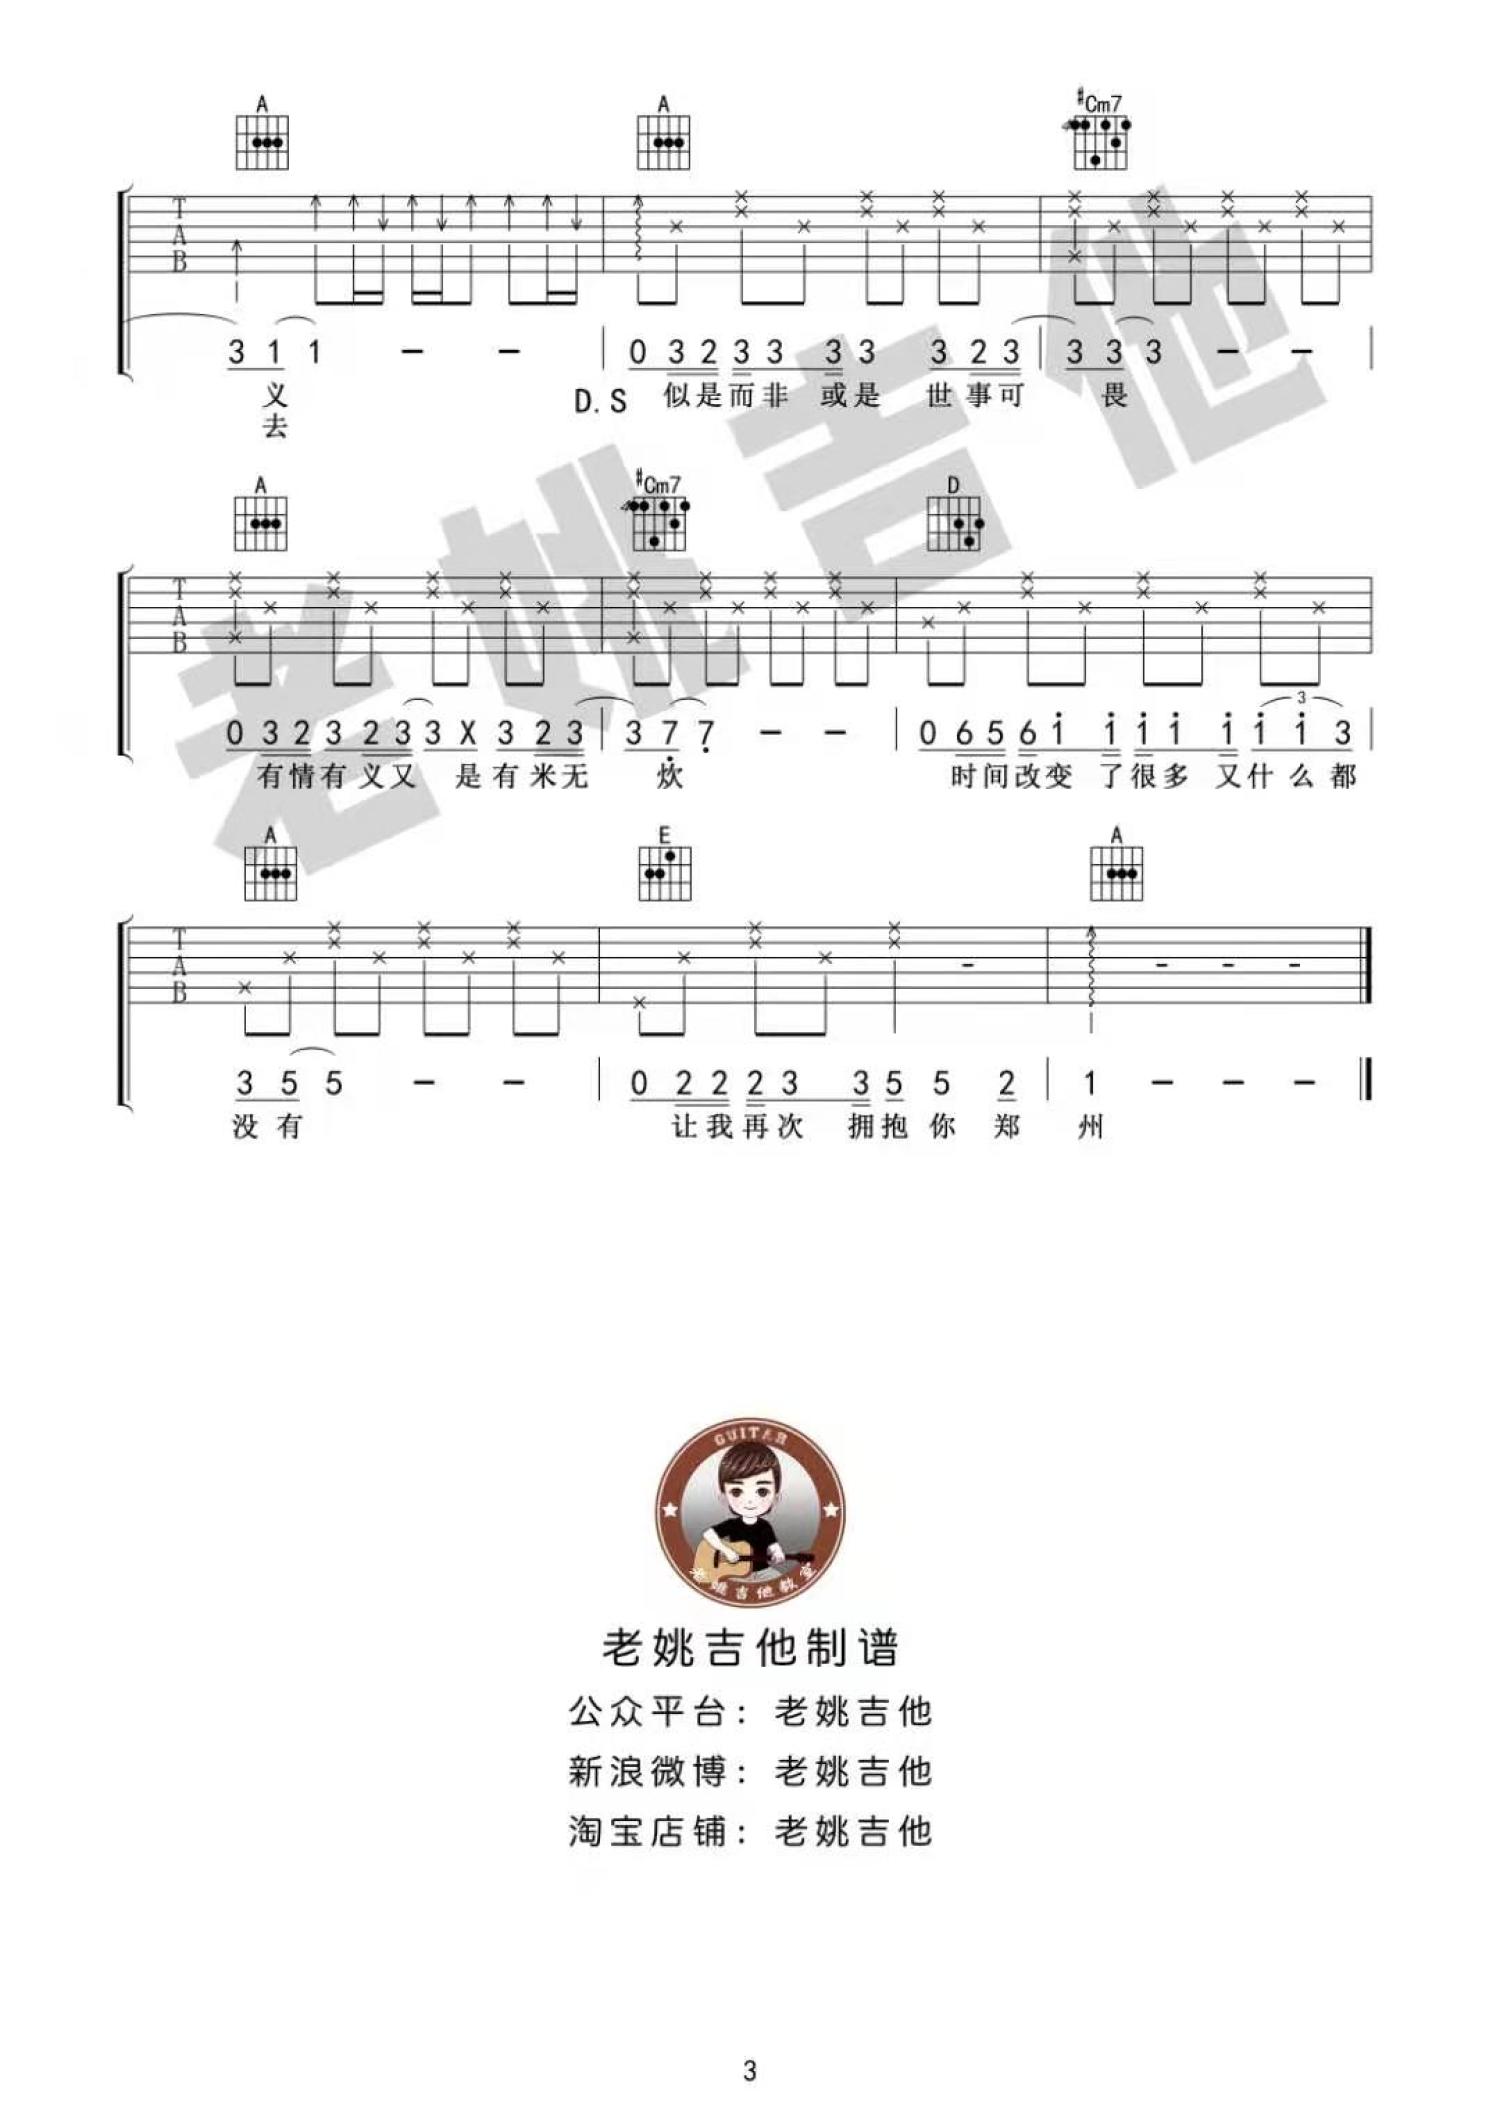 关于郑州的记忆吉他谱 - 虫虫吉他谱免费下载 - 虫虫吉他